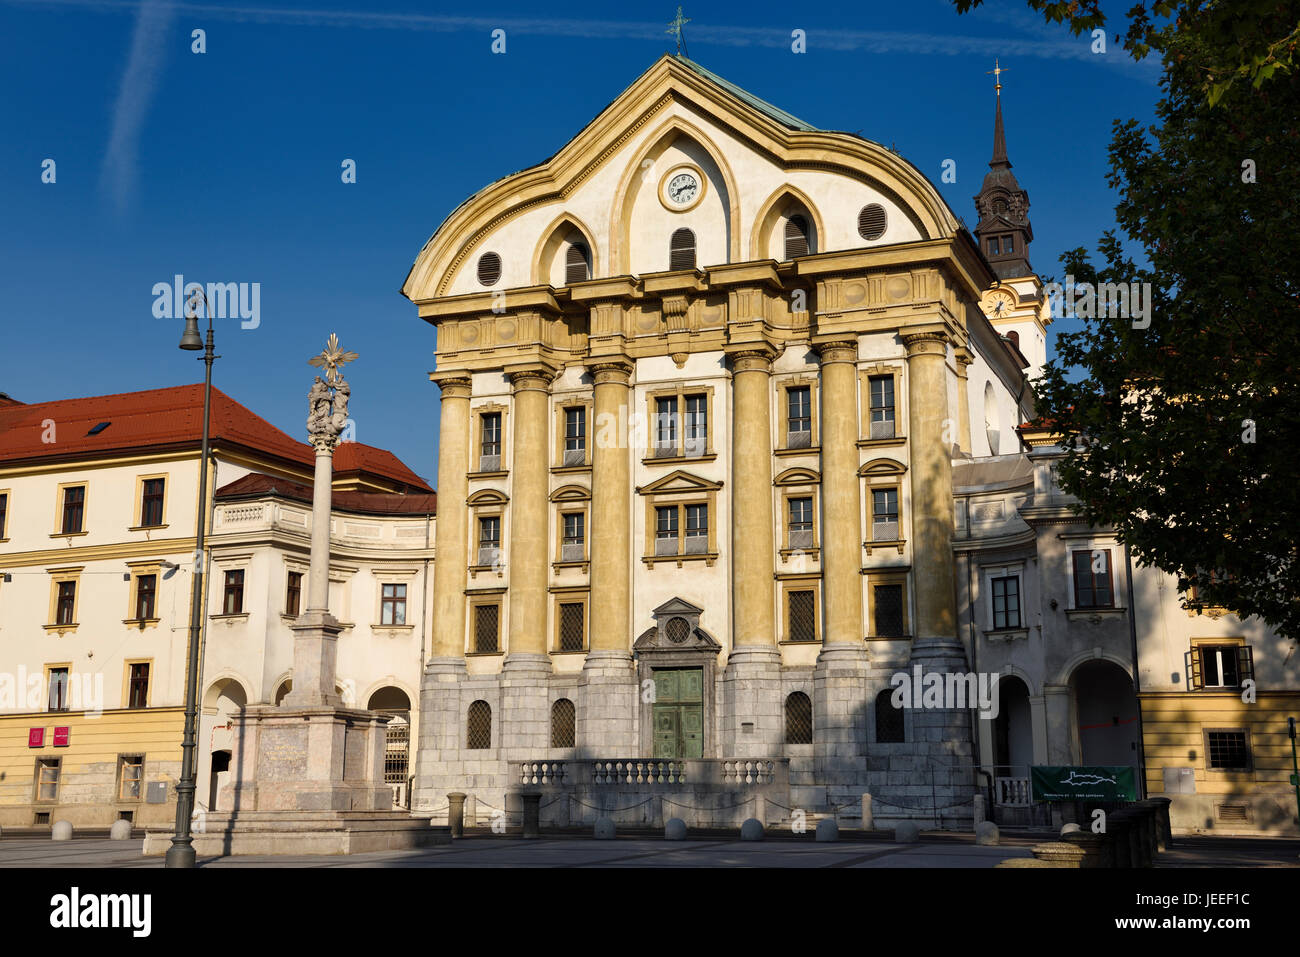 Sonnenschein auf die Ursulinen-Kirche der Heiligen Dreifaltigkeit mit Marmor-Statuen der Heiligen Dreifaltigkeit Spalte in Ljubljana Slowenien mit Uhr und der Glockenturm Stockfoto